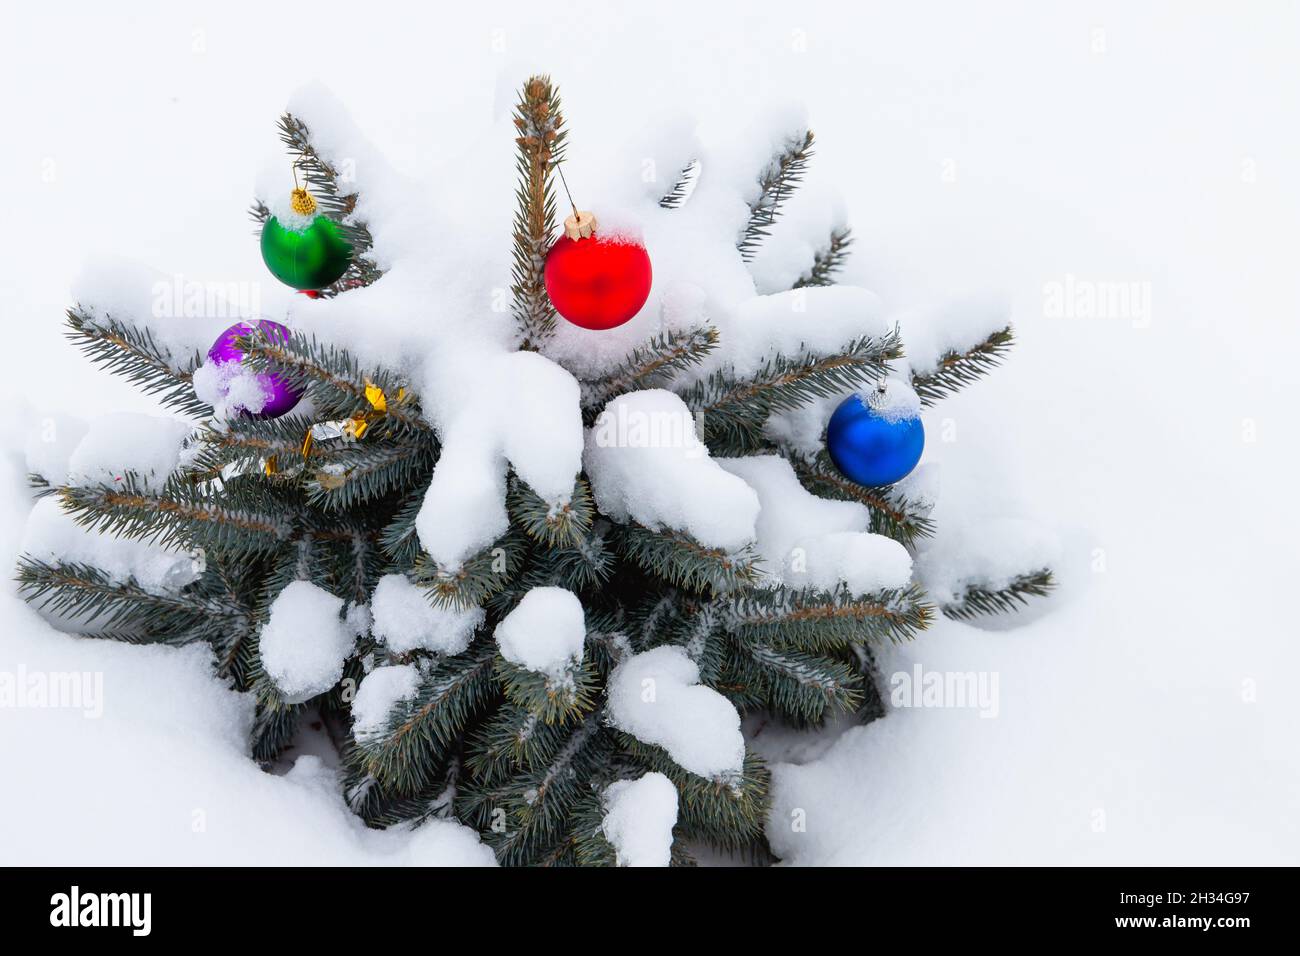 Piccolo albero di Natale cresce in una nevicata con palline colorate decorazione coperto di neve Foto Stock